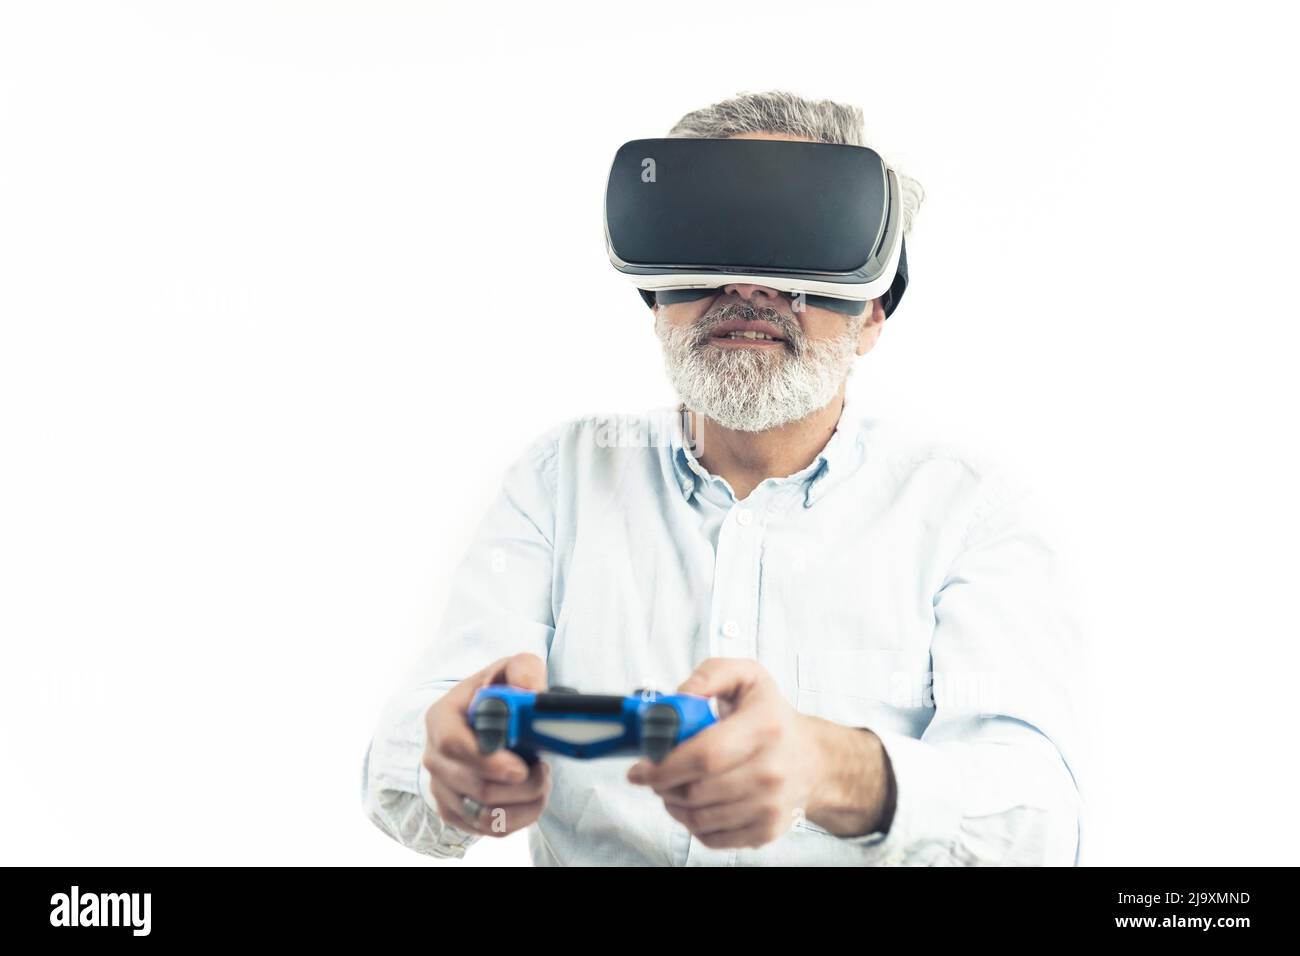 Kaukasischer Mann mittleren Alters mit silbergrauem Haar, das Virtual Reality Googles trägt und einen blauen Gamepad hält. Isoliert auf Weiß. Hochwertige Fotos Stockfoto